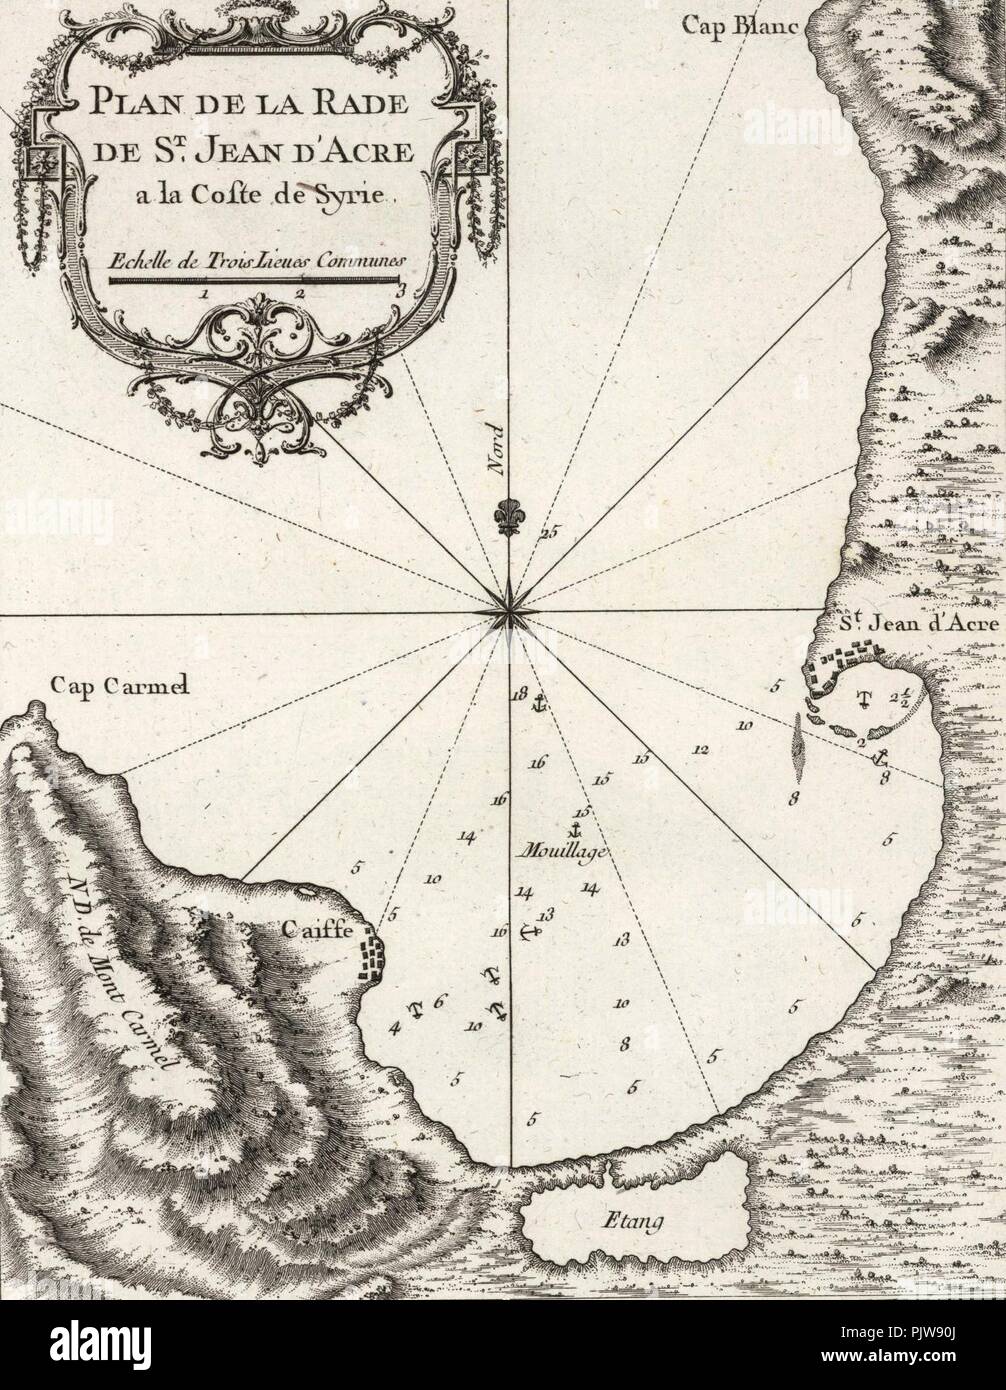 Bellin, Jacques Nicolas. Plan De La Rade De St. Jean D'Acre a la Coste de Syrie. 1764. Stock Photo